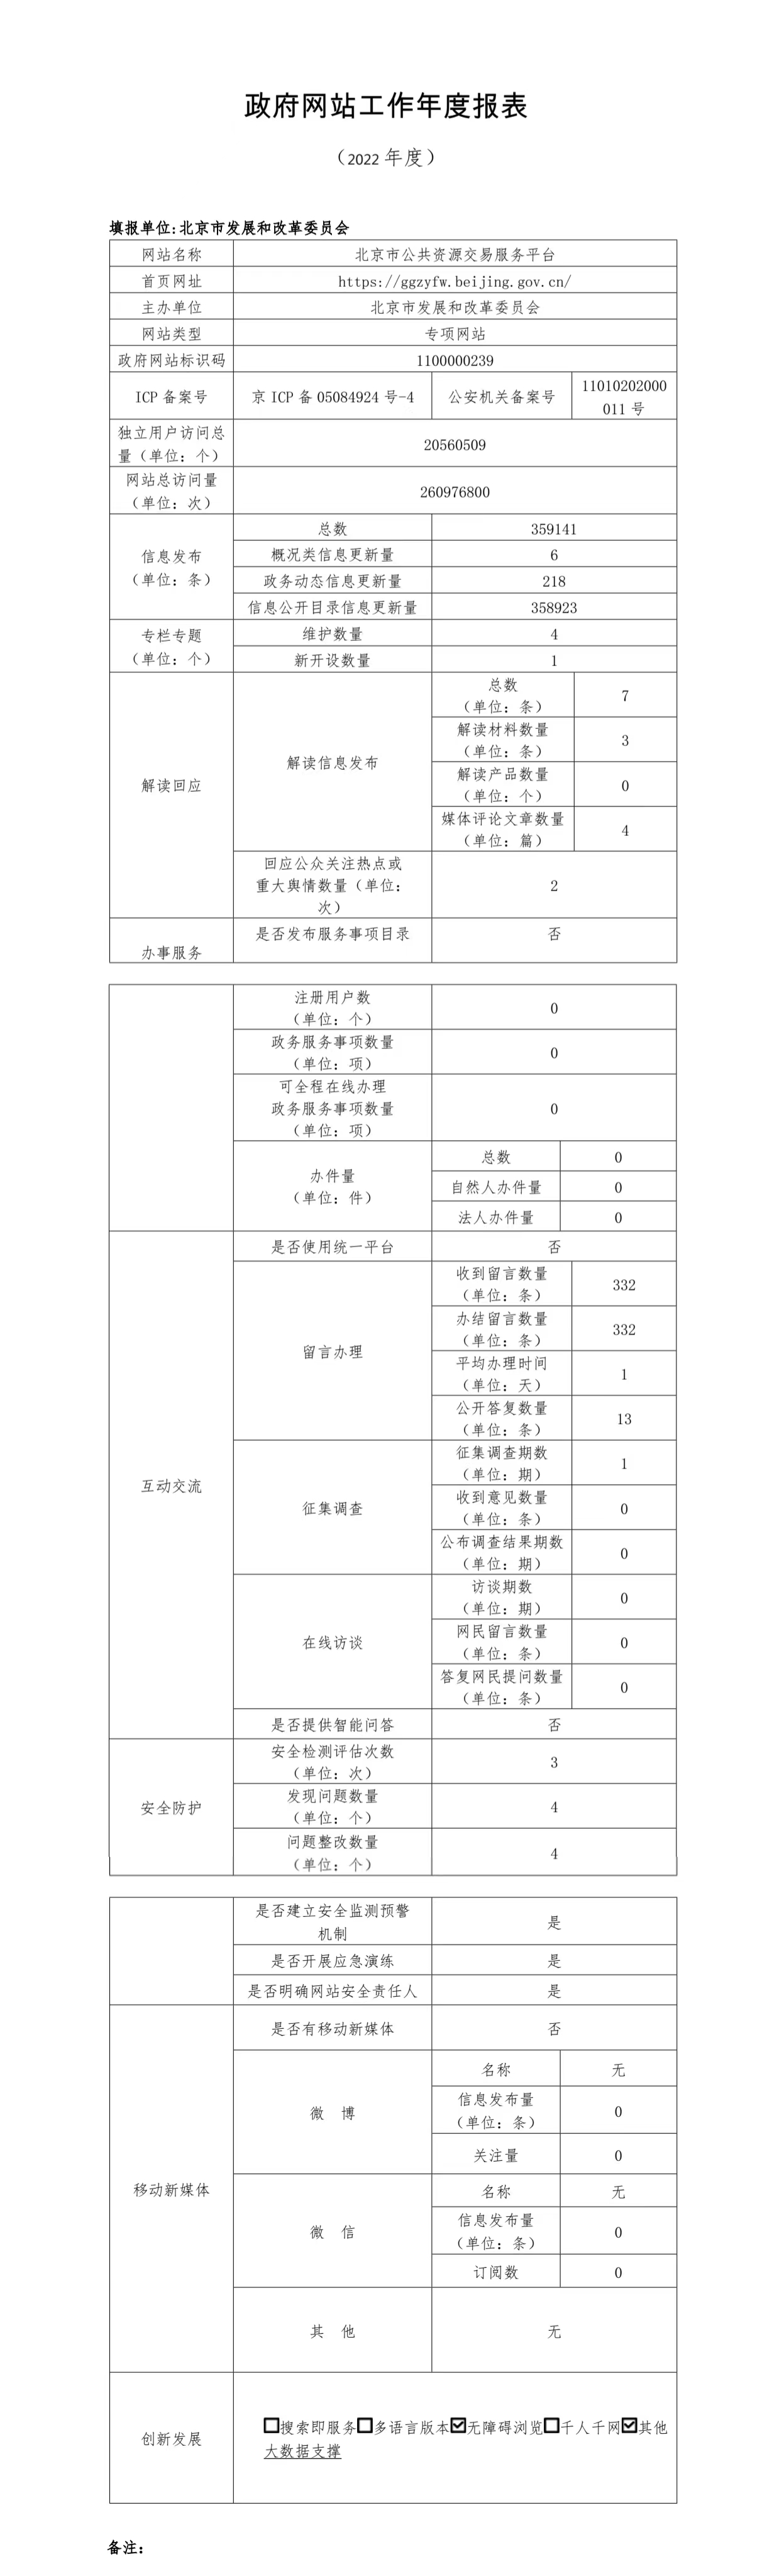 北京市公共資源交易服務平臺2022年政府網站年度工作報表